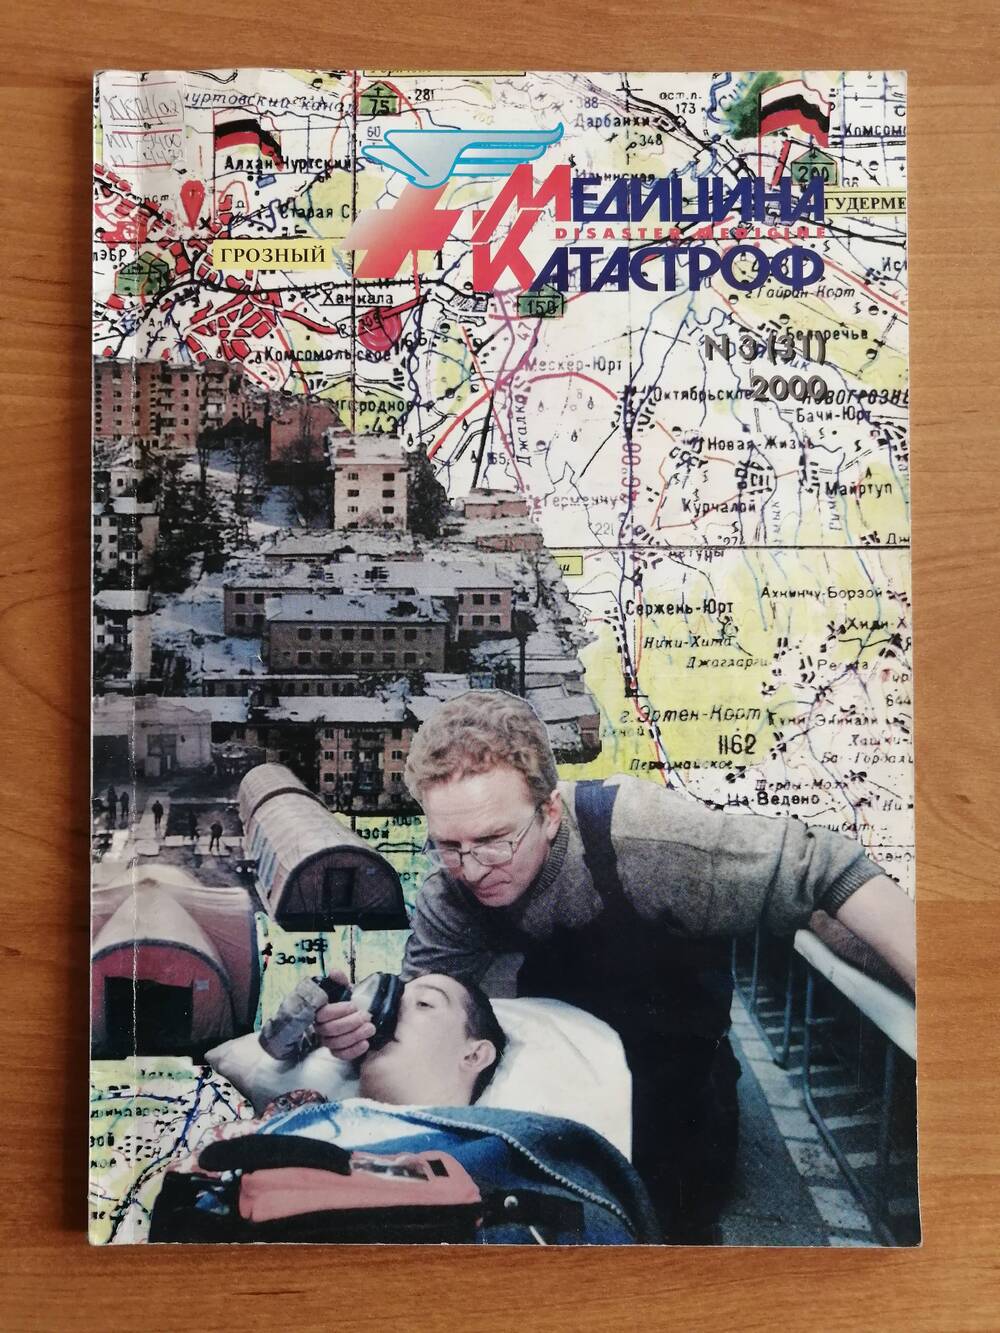 Журнал Медицина катастроф №3 (31) за 2000 г. На обложке фотография Вяткина Александра Андреевича.